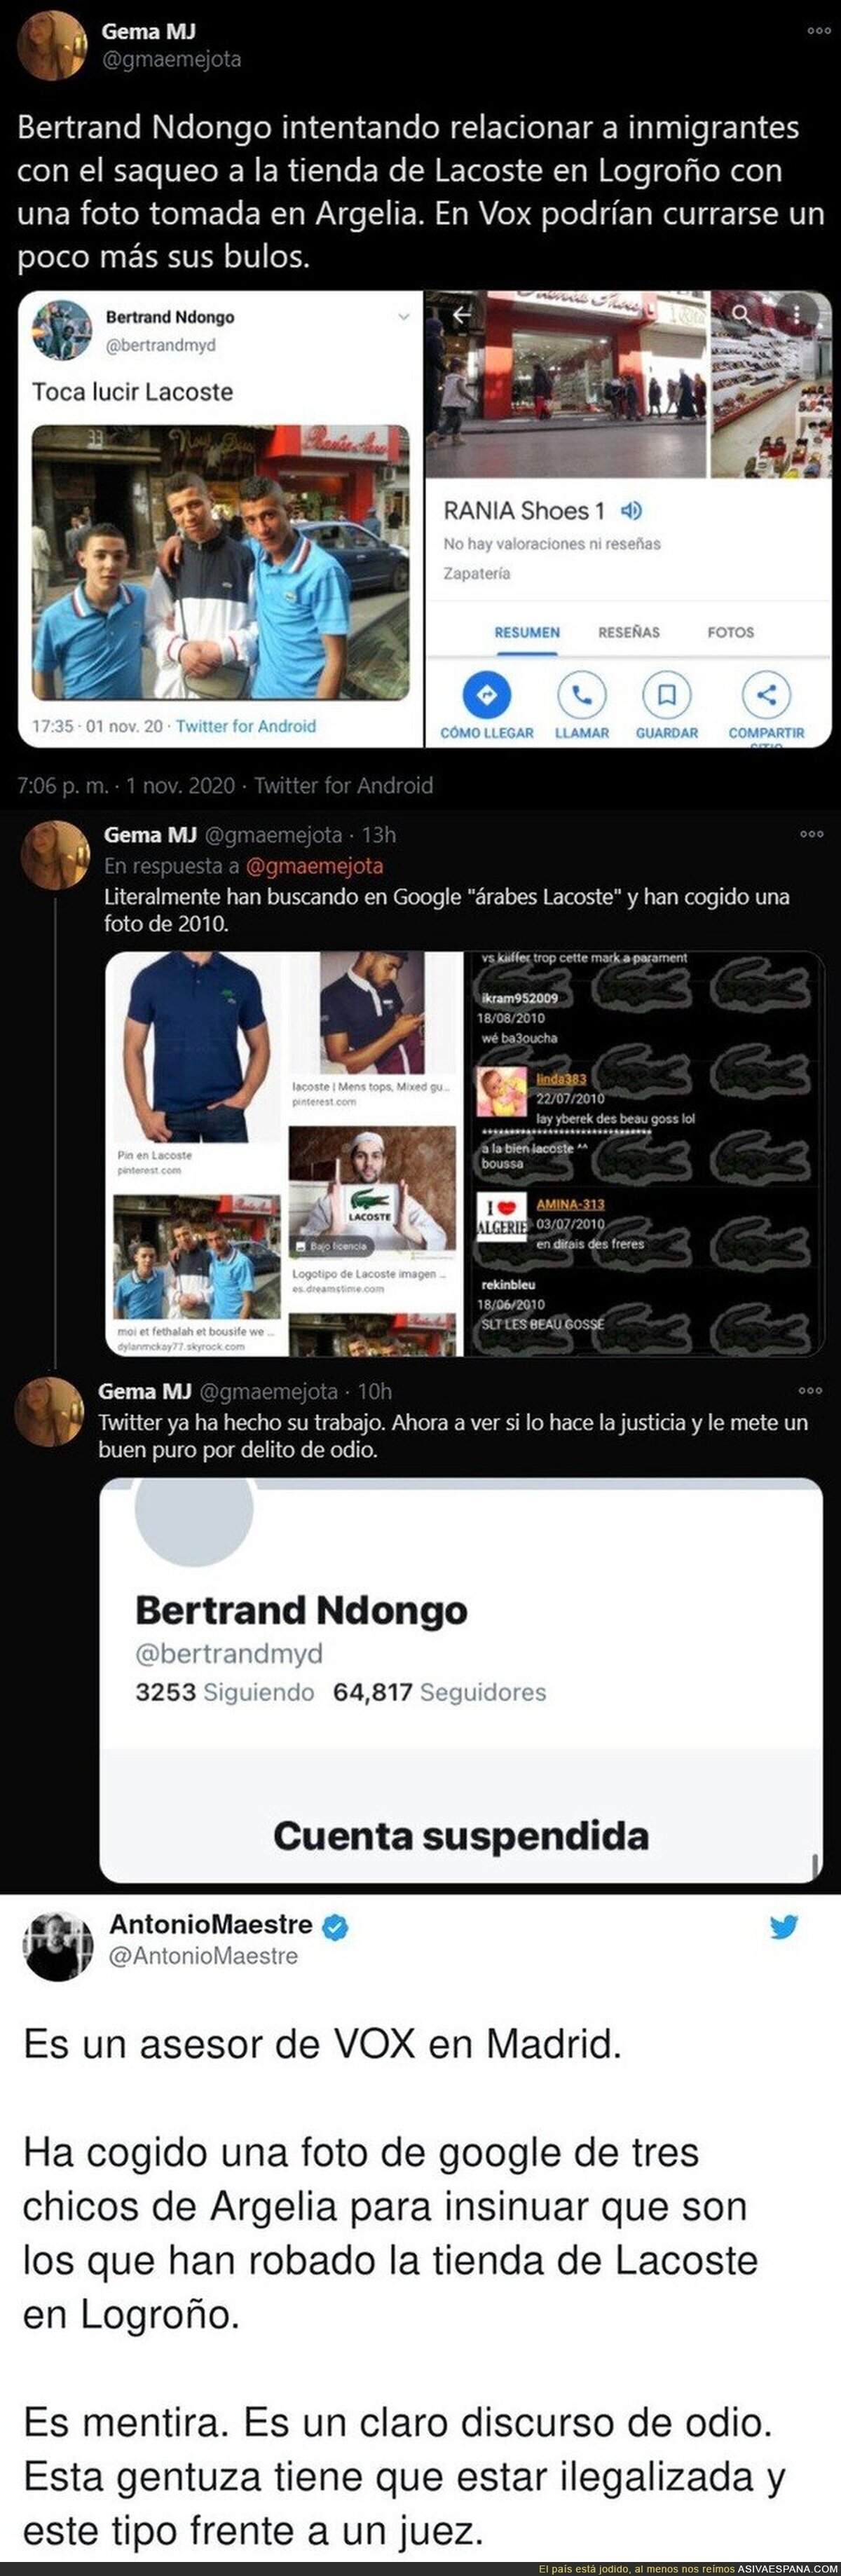 Twitter le suspende la cuenta de Bertrand Ndongo (VOX) tras difundir estos mensajes sobre unos chicos jóvenes